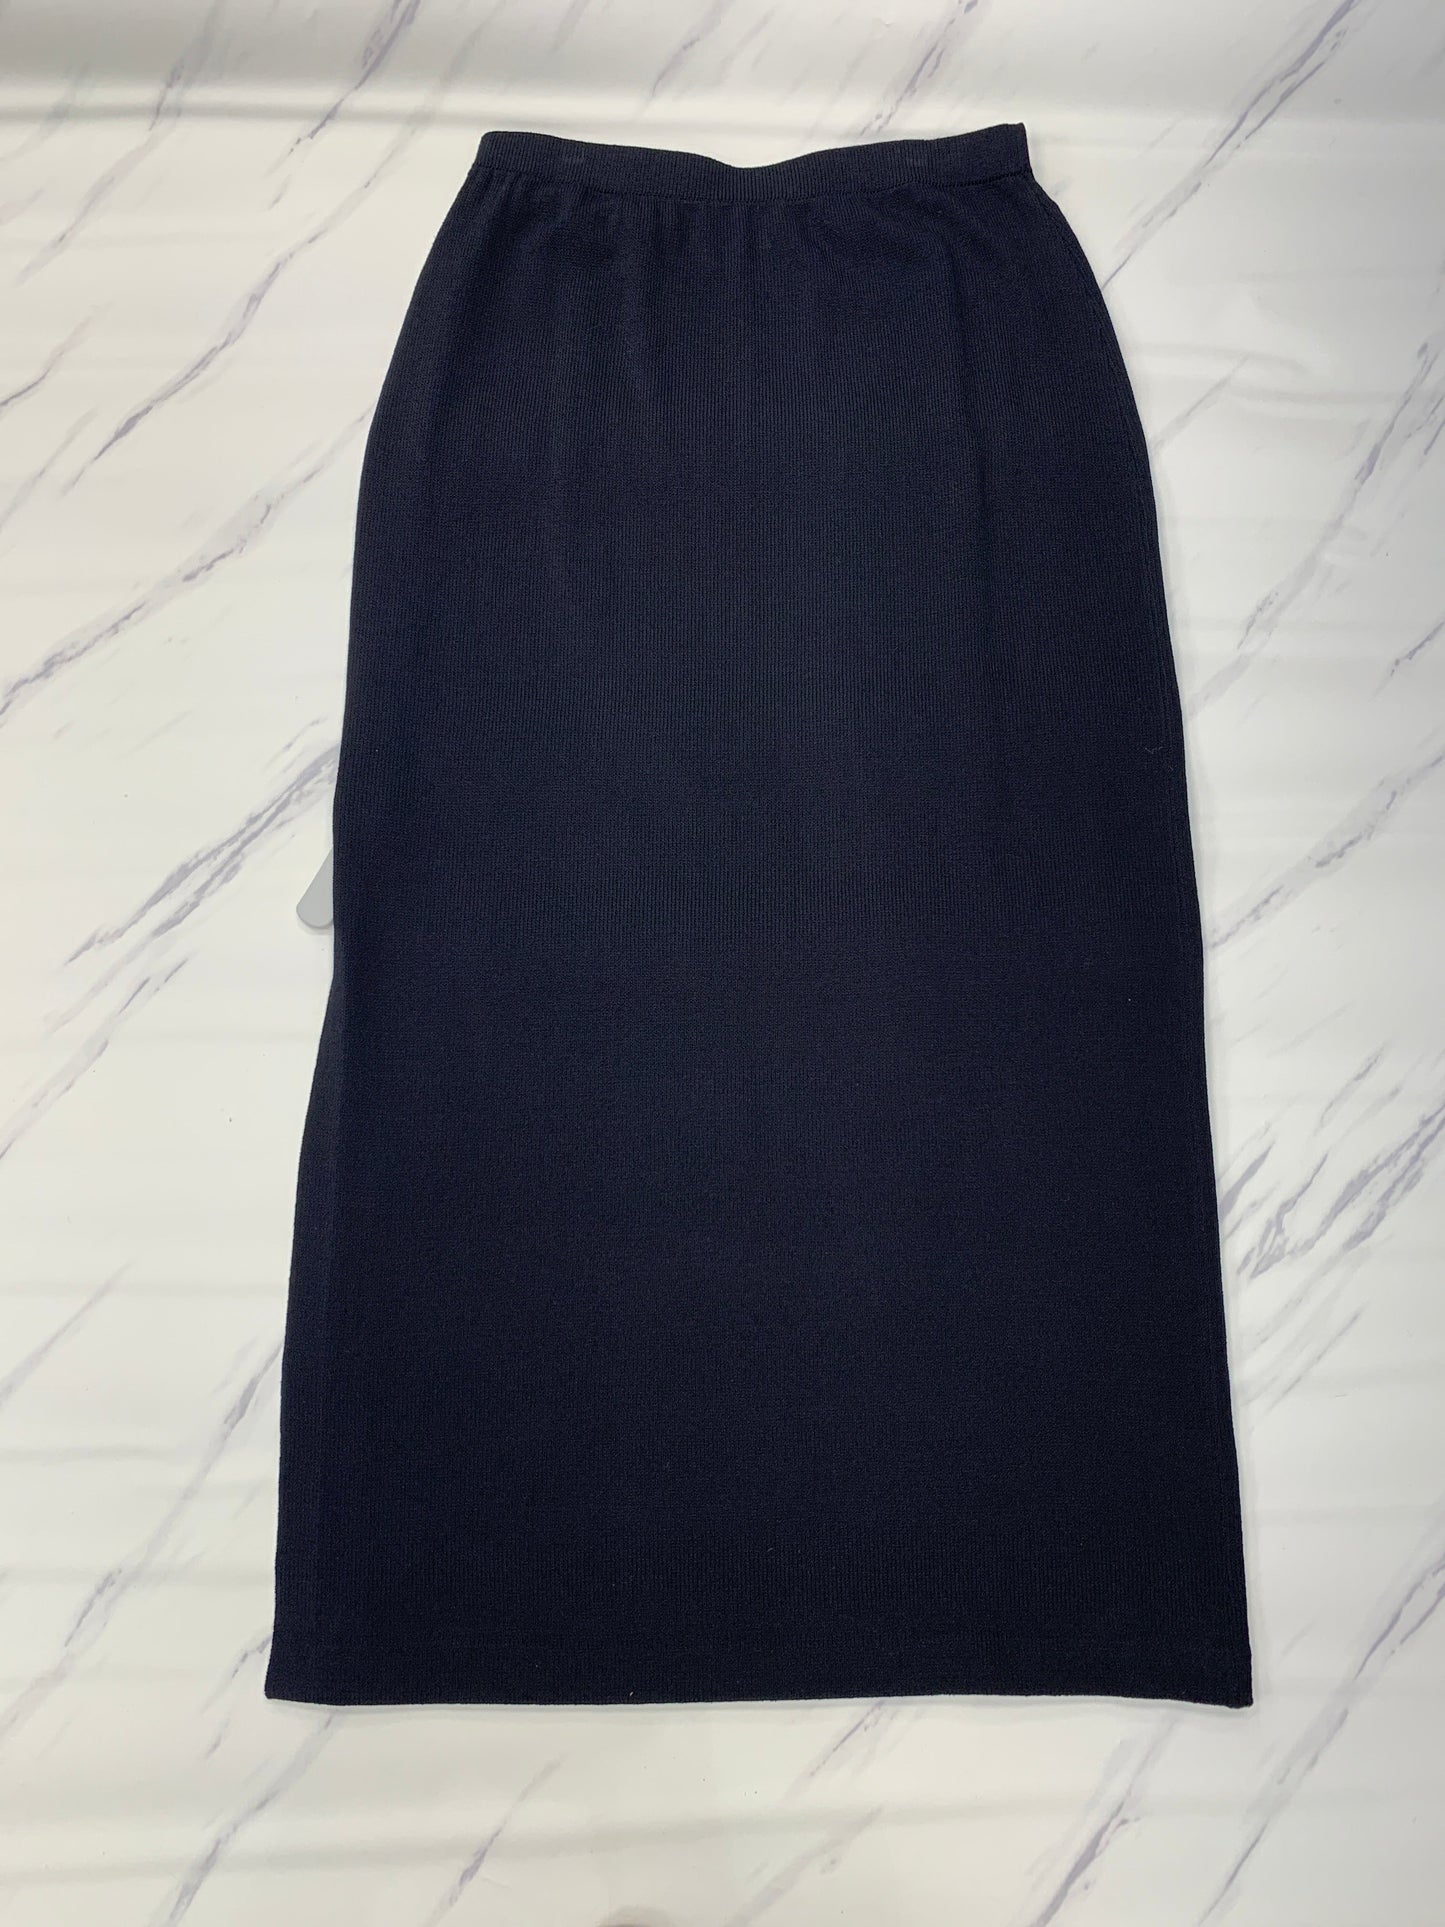 Black Skirt Designer St John Collection, Size 14